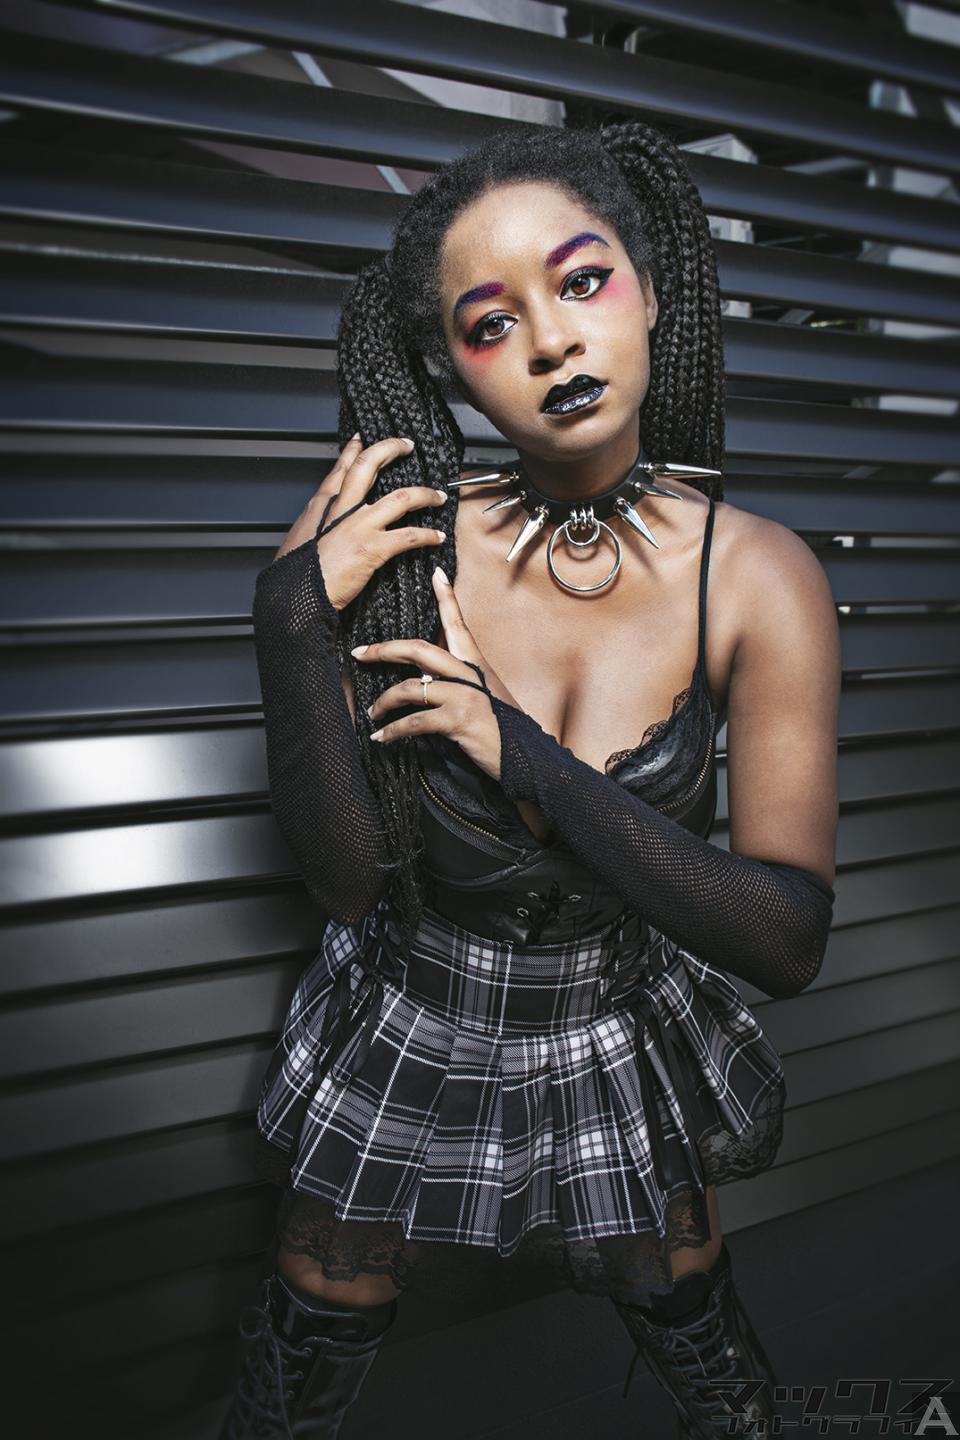 東京外国人モデル事務所アクアモデルの黒人女性モデルシエラ